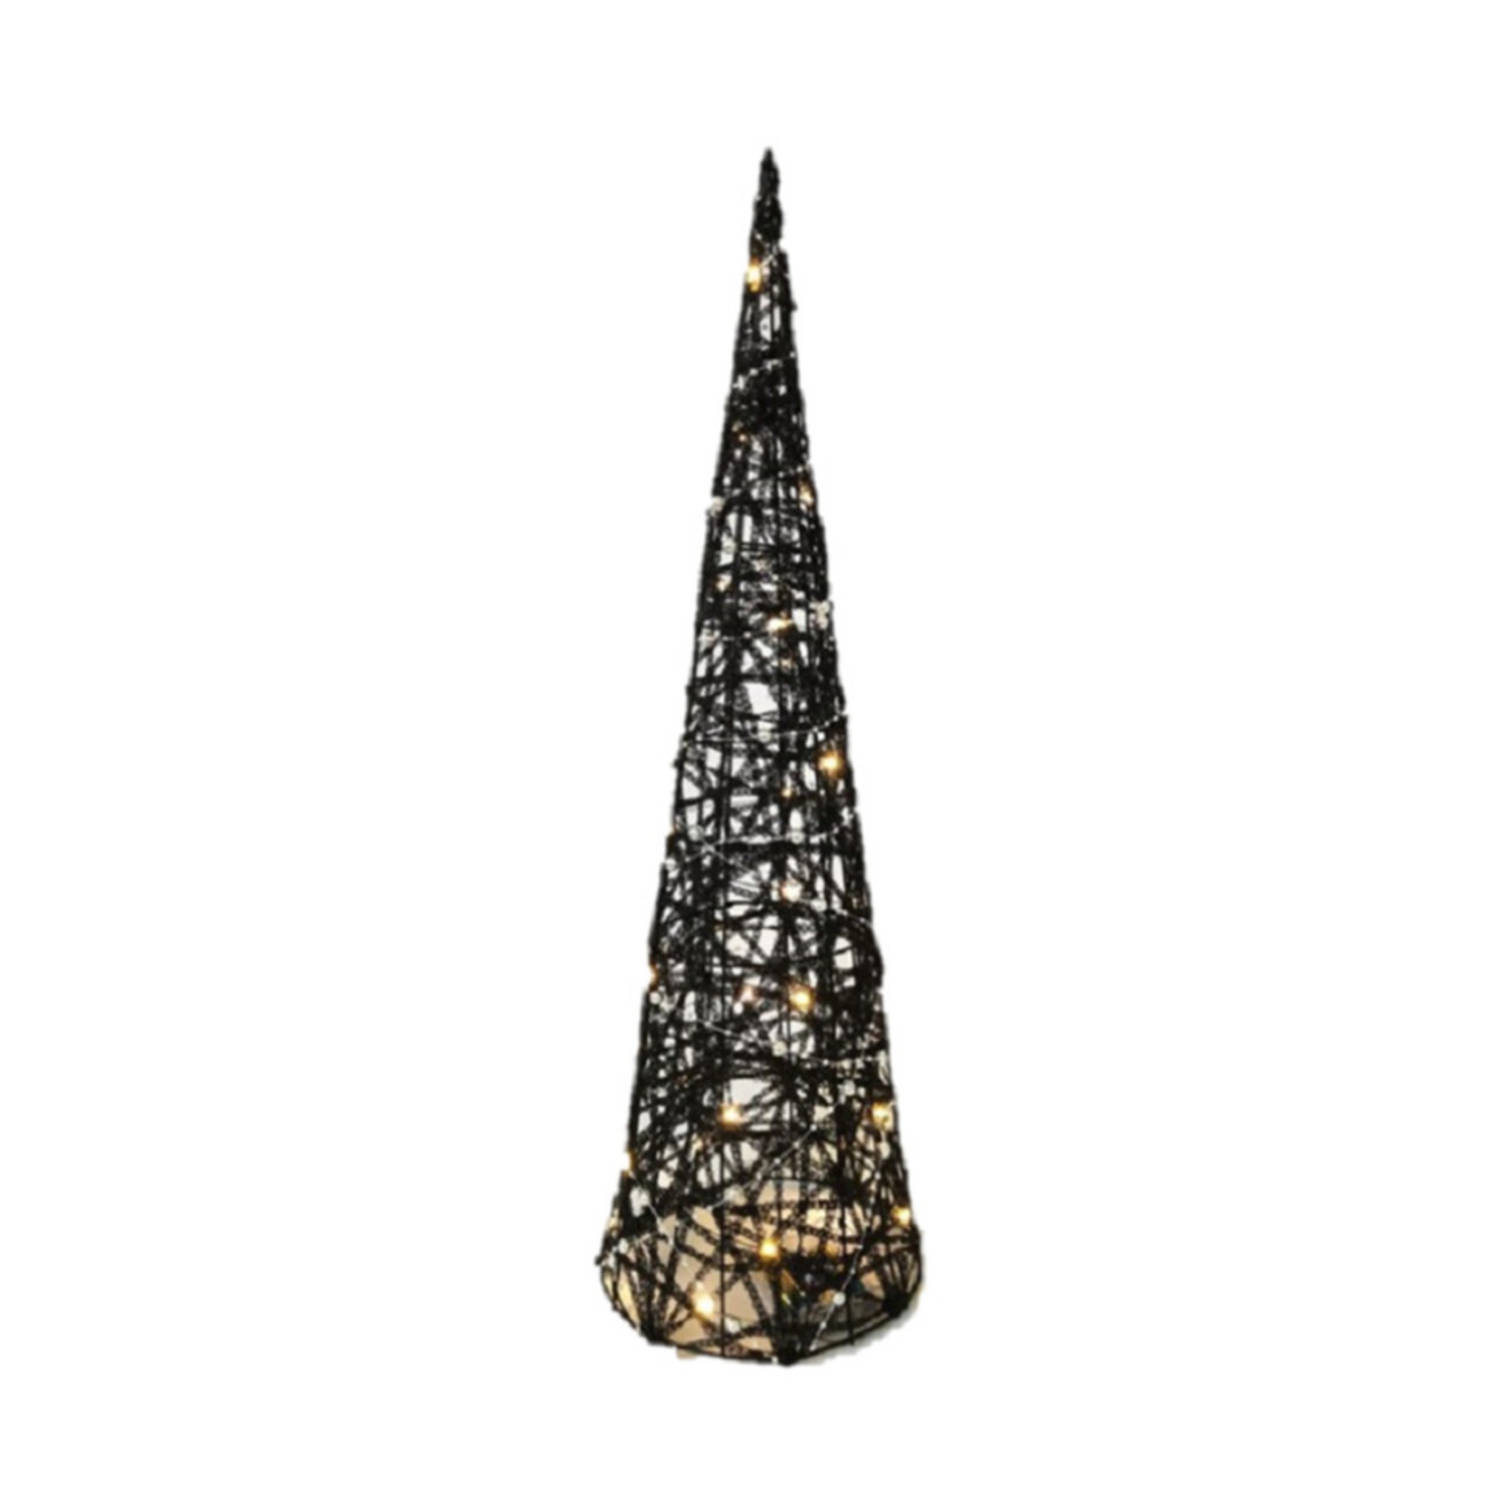 LED piramide kerstboom H40 cm zwart rotan kerstverlichting kerstverlichting figuur